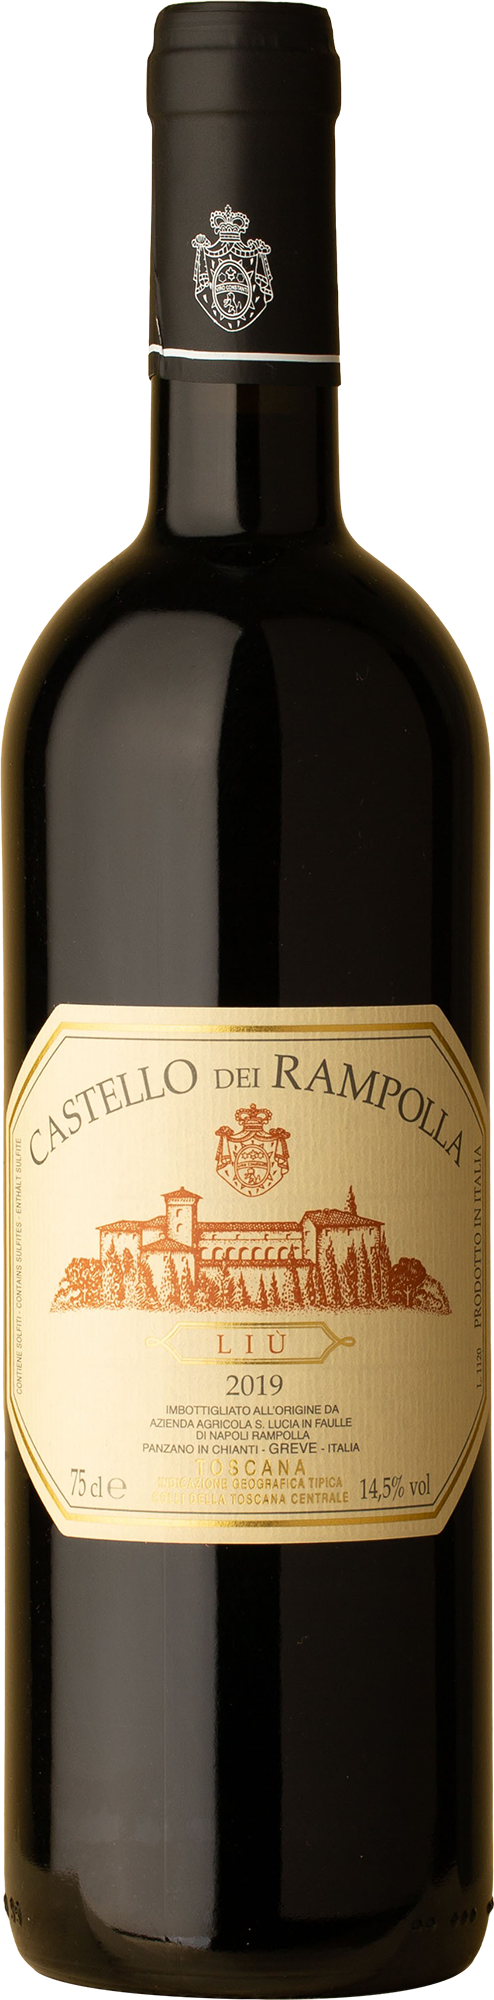 Castello dei Rampolla - Liu Merlot 2019 Red Wine